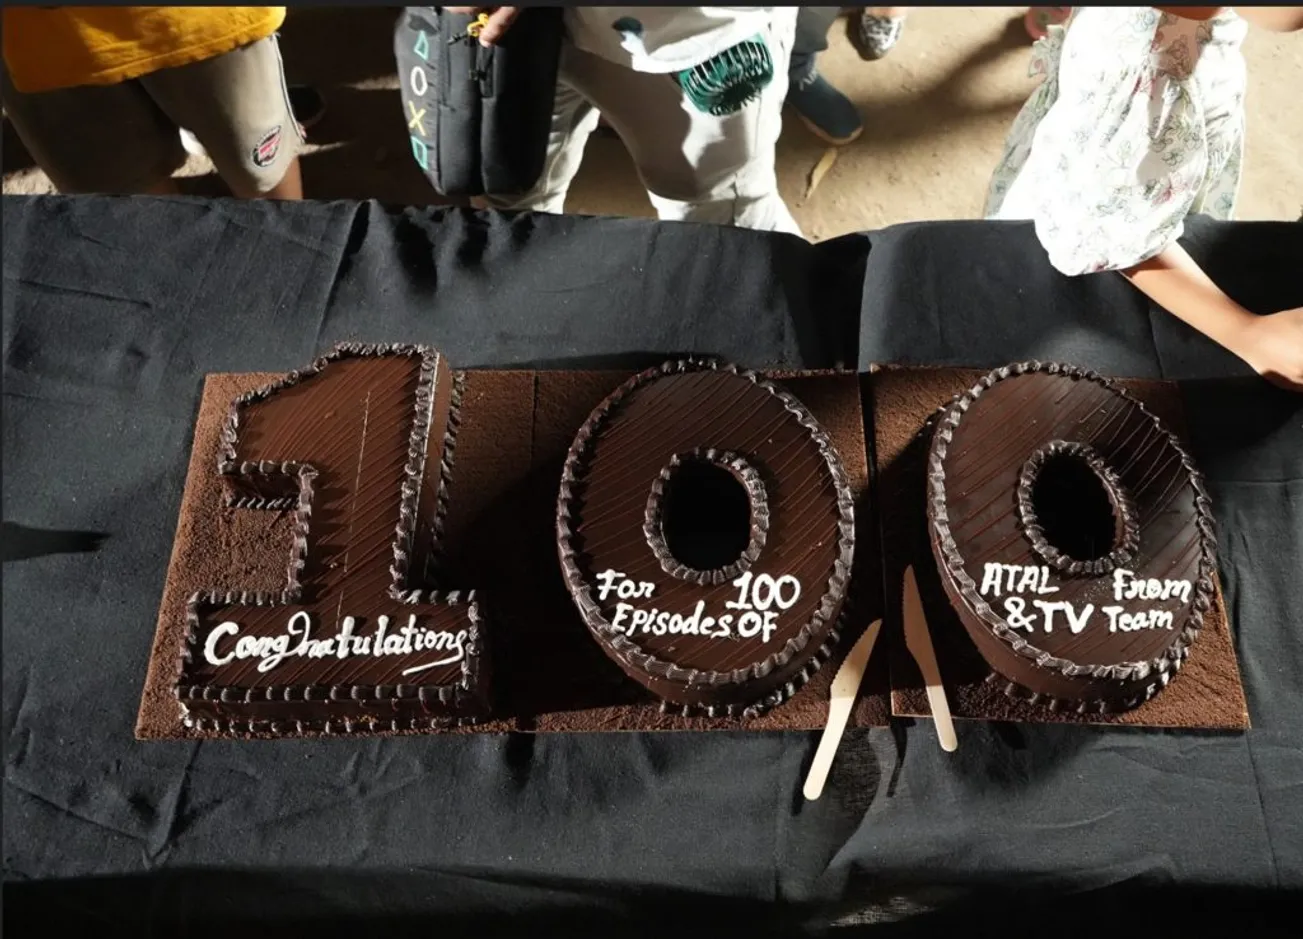 TV's Atal celebrates a milestone of 100 Episodes!